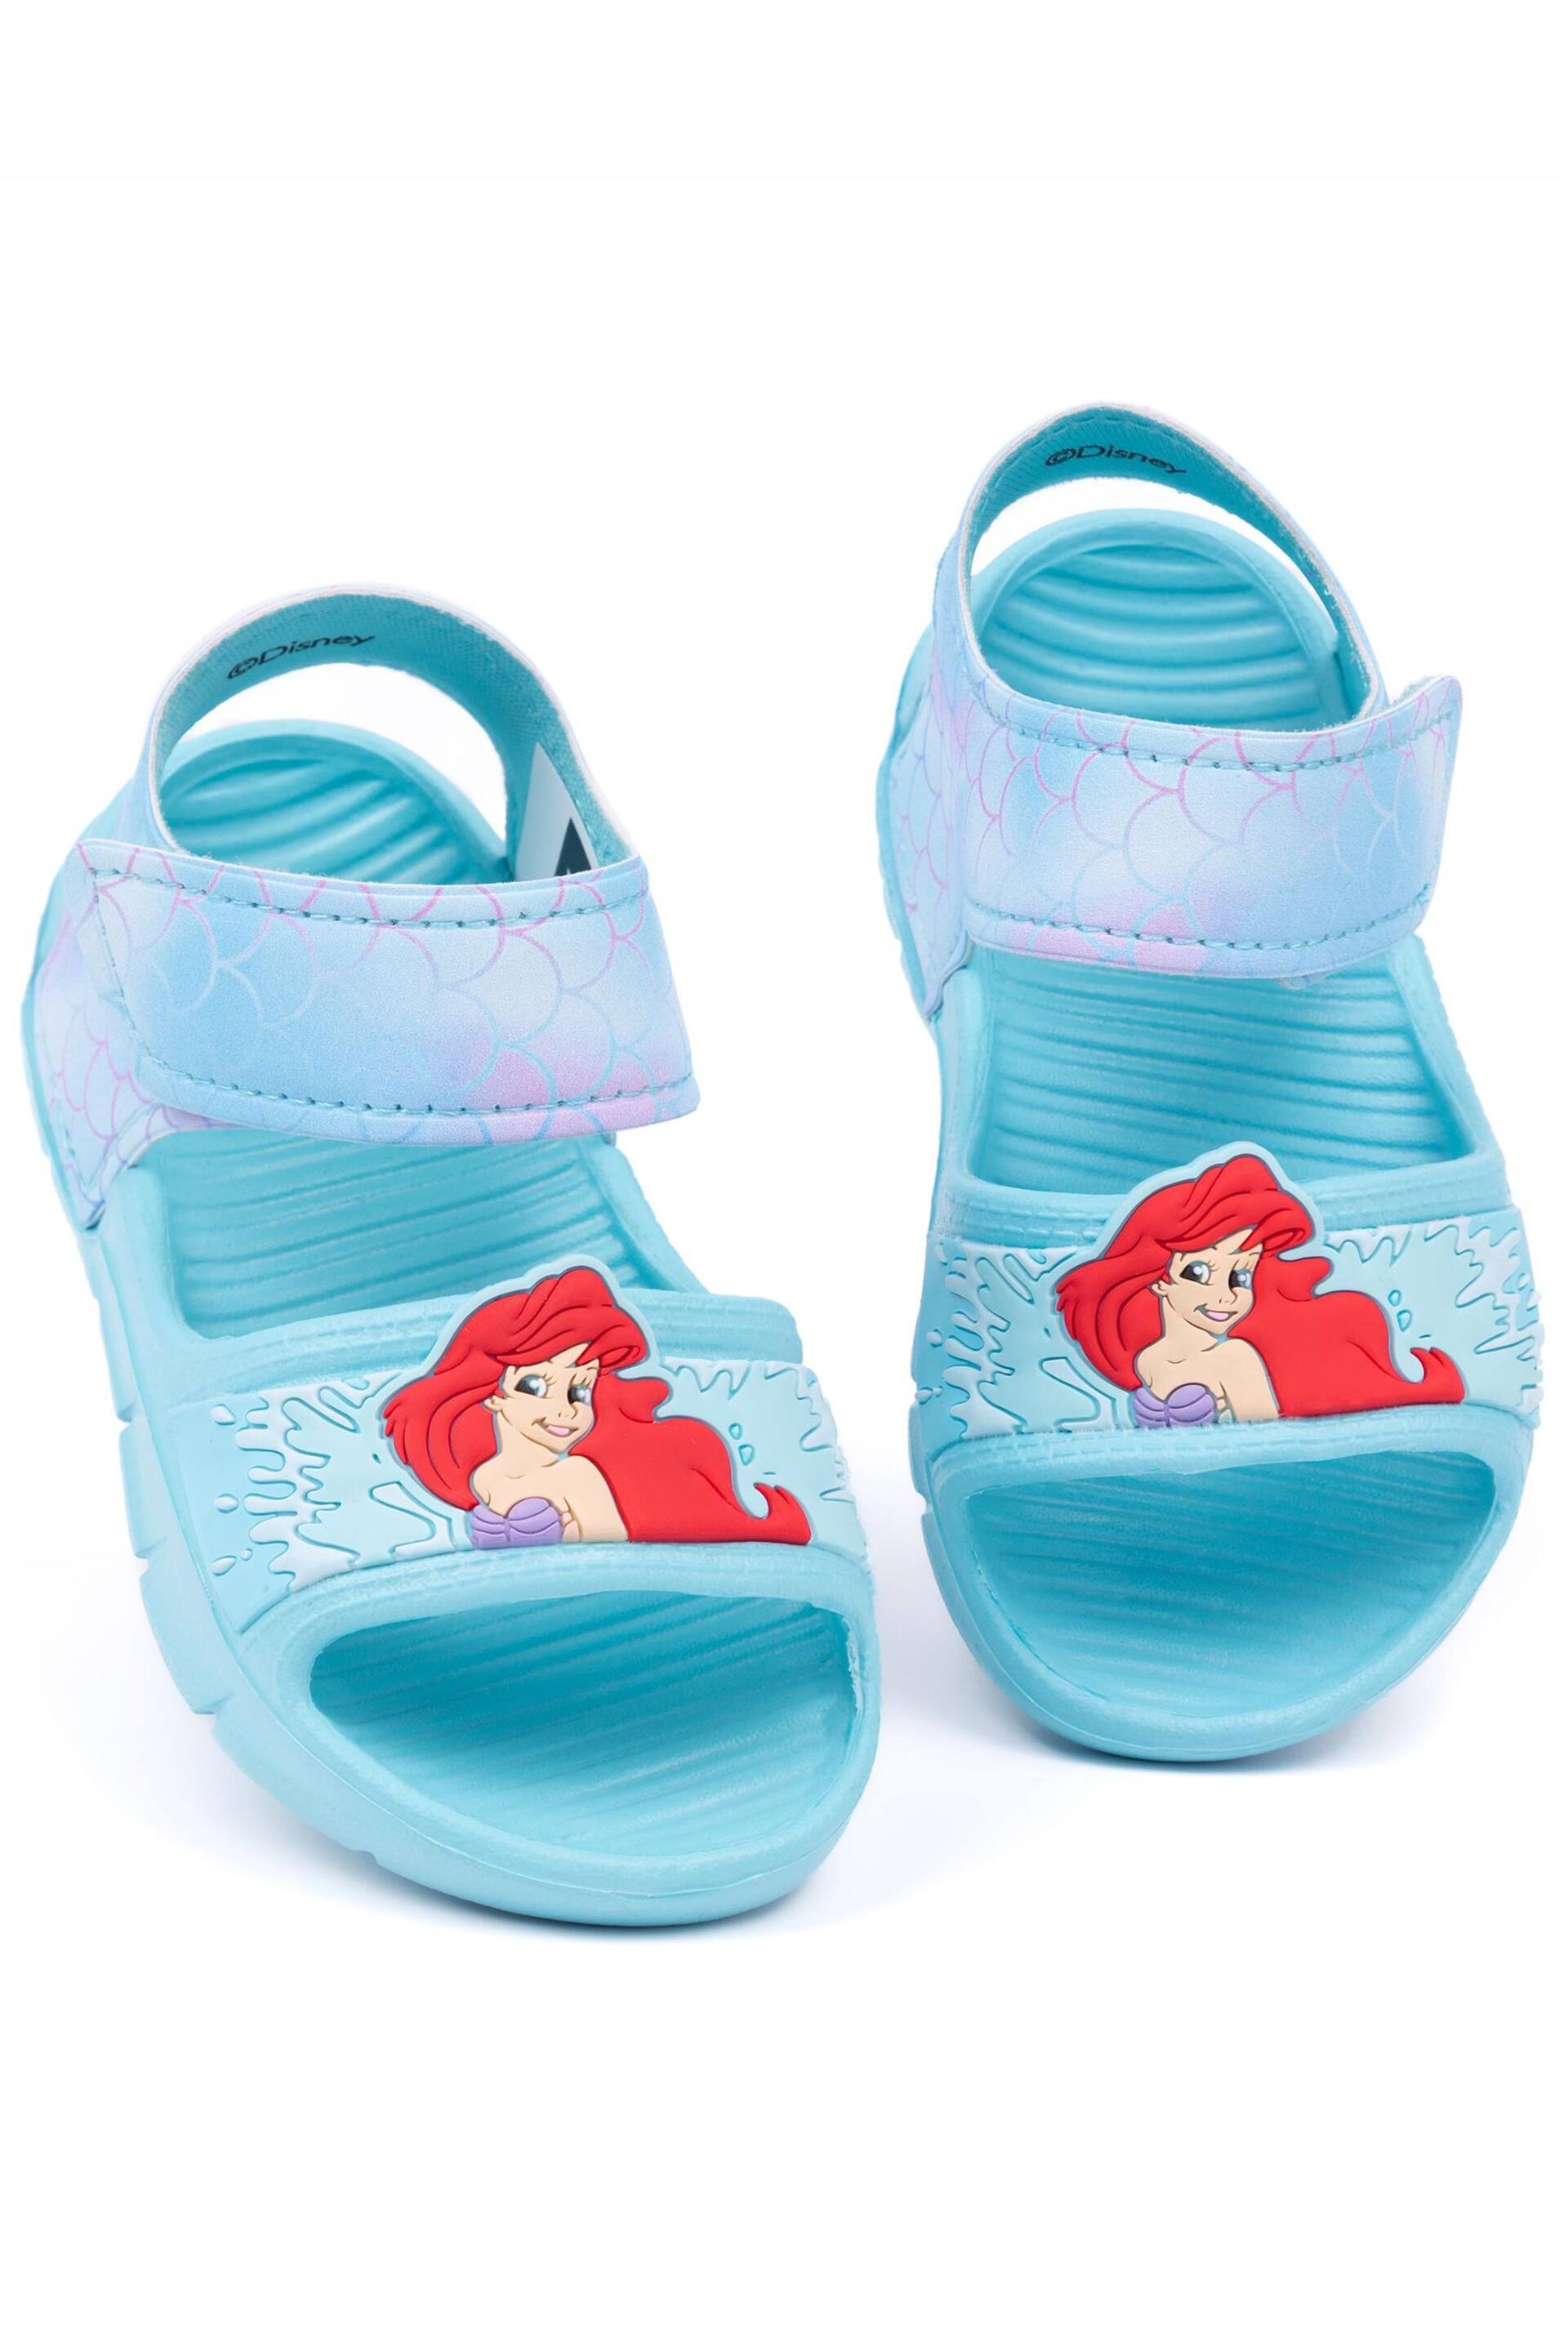 Vanilla Underground Blue Girls Little Mermaid Disney Sandals - Image 1 of 5